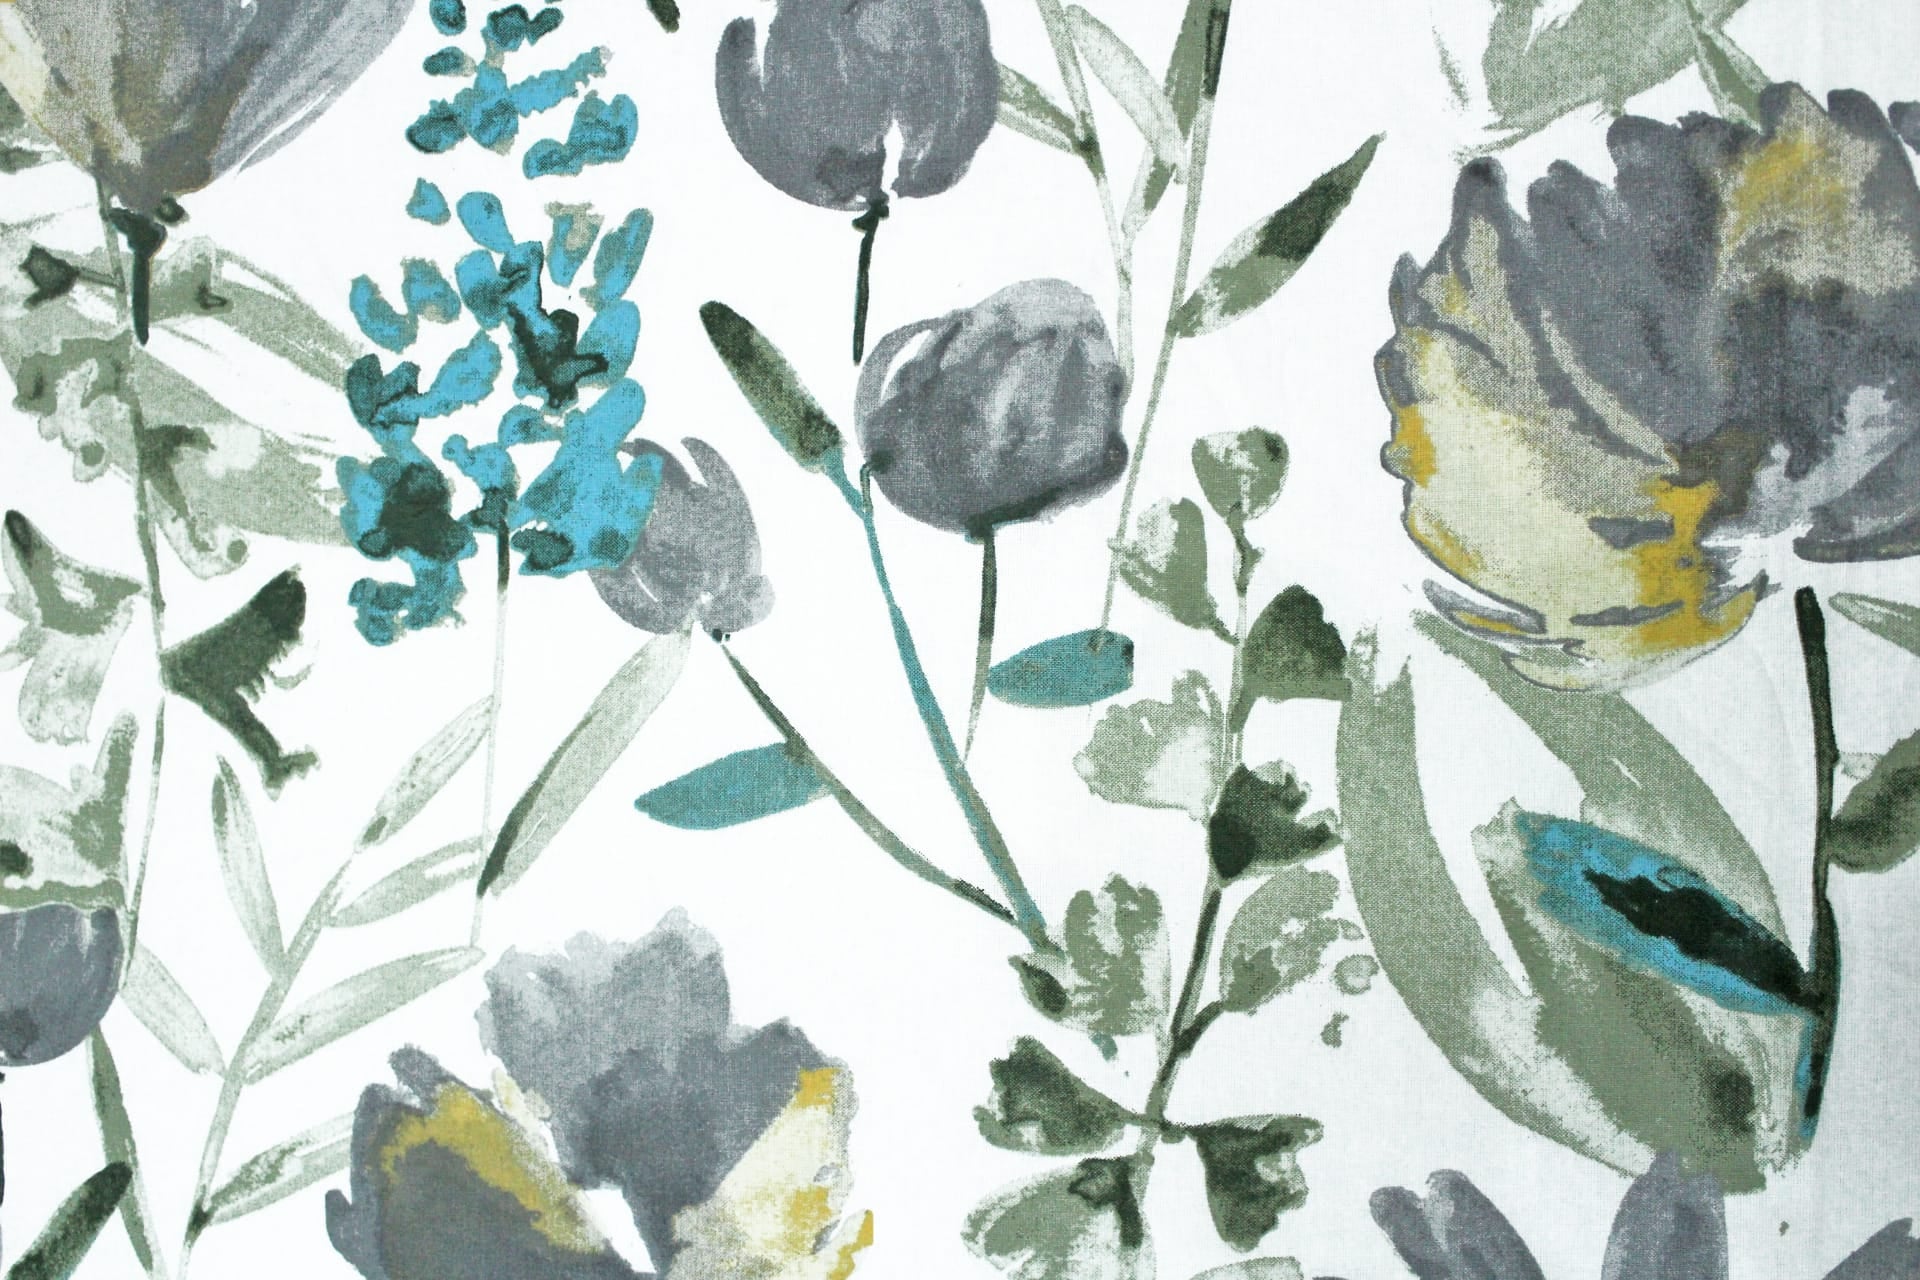 Printed Floral Pattern Cotton 6 Pcs Diwan Bedsheet Set - Aqua